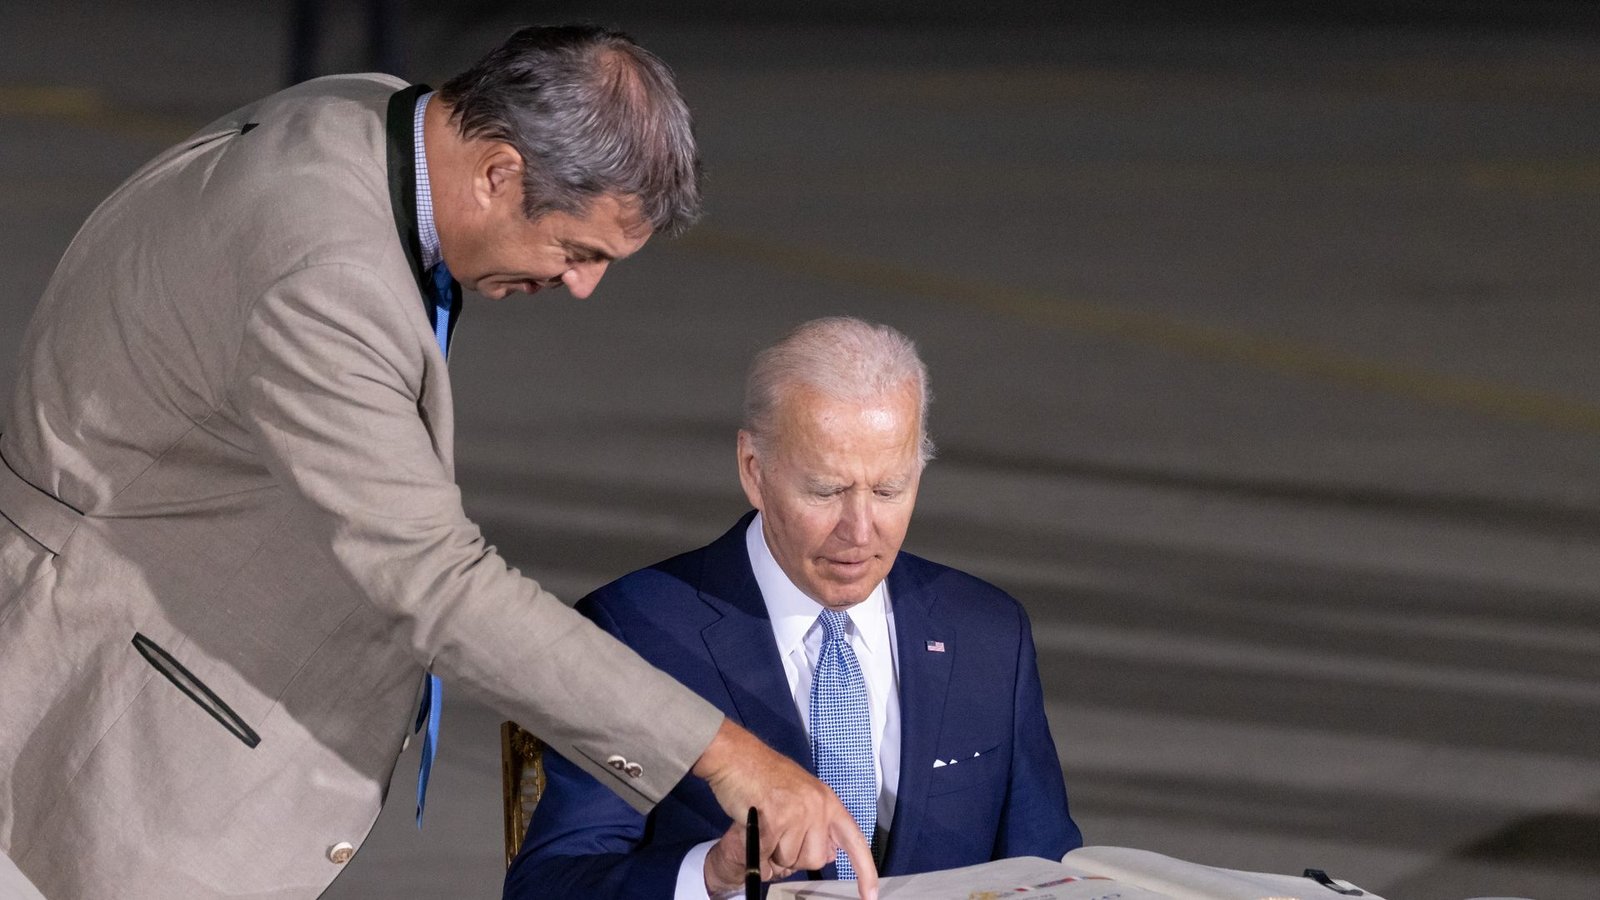 Bayerns Ministerpräsident Markus Söder zeigt US-Präsident Joe Biden, wo er sich ins Goldenene Buch der Staatsregierung eintragen kann. Der Amerikaner ist anlässlich des G7-Gipfels zum ersten Mal seit seinem Amtstantritt in Deutschland.Foto: Daniel Karmann/dpa